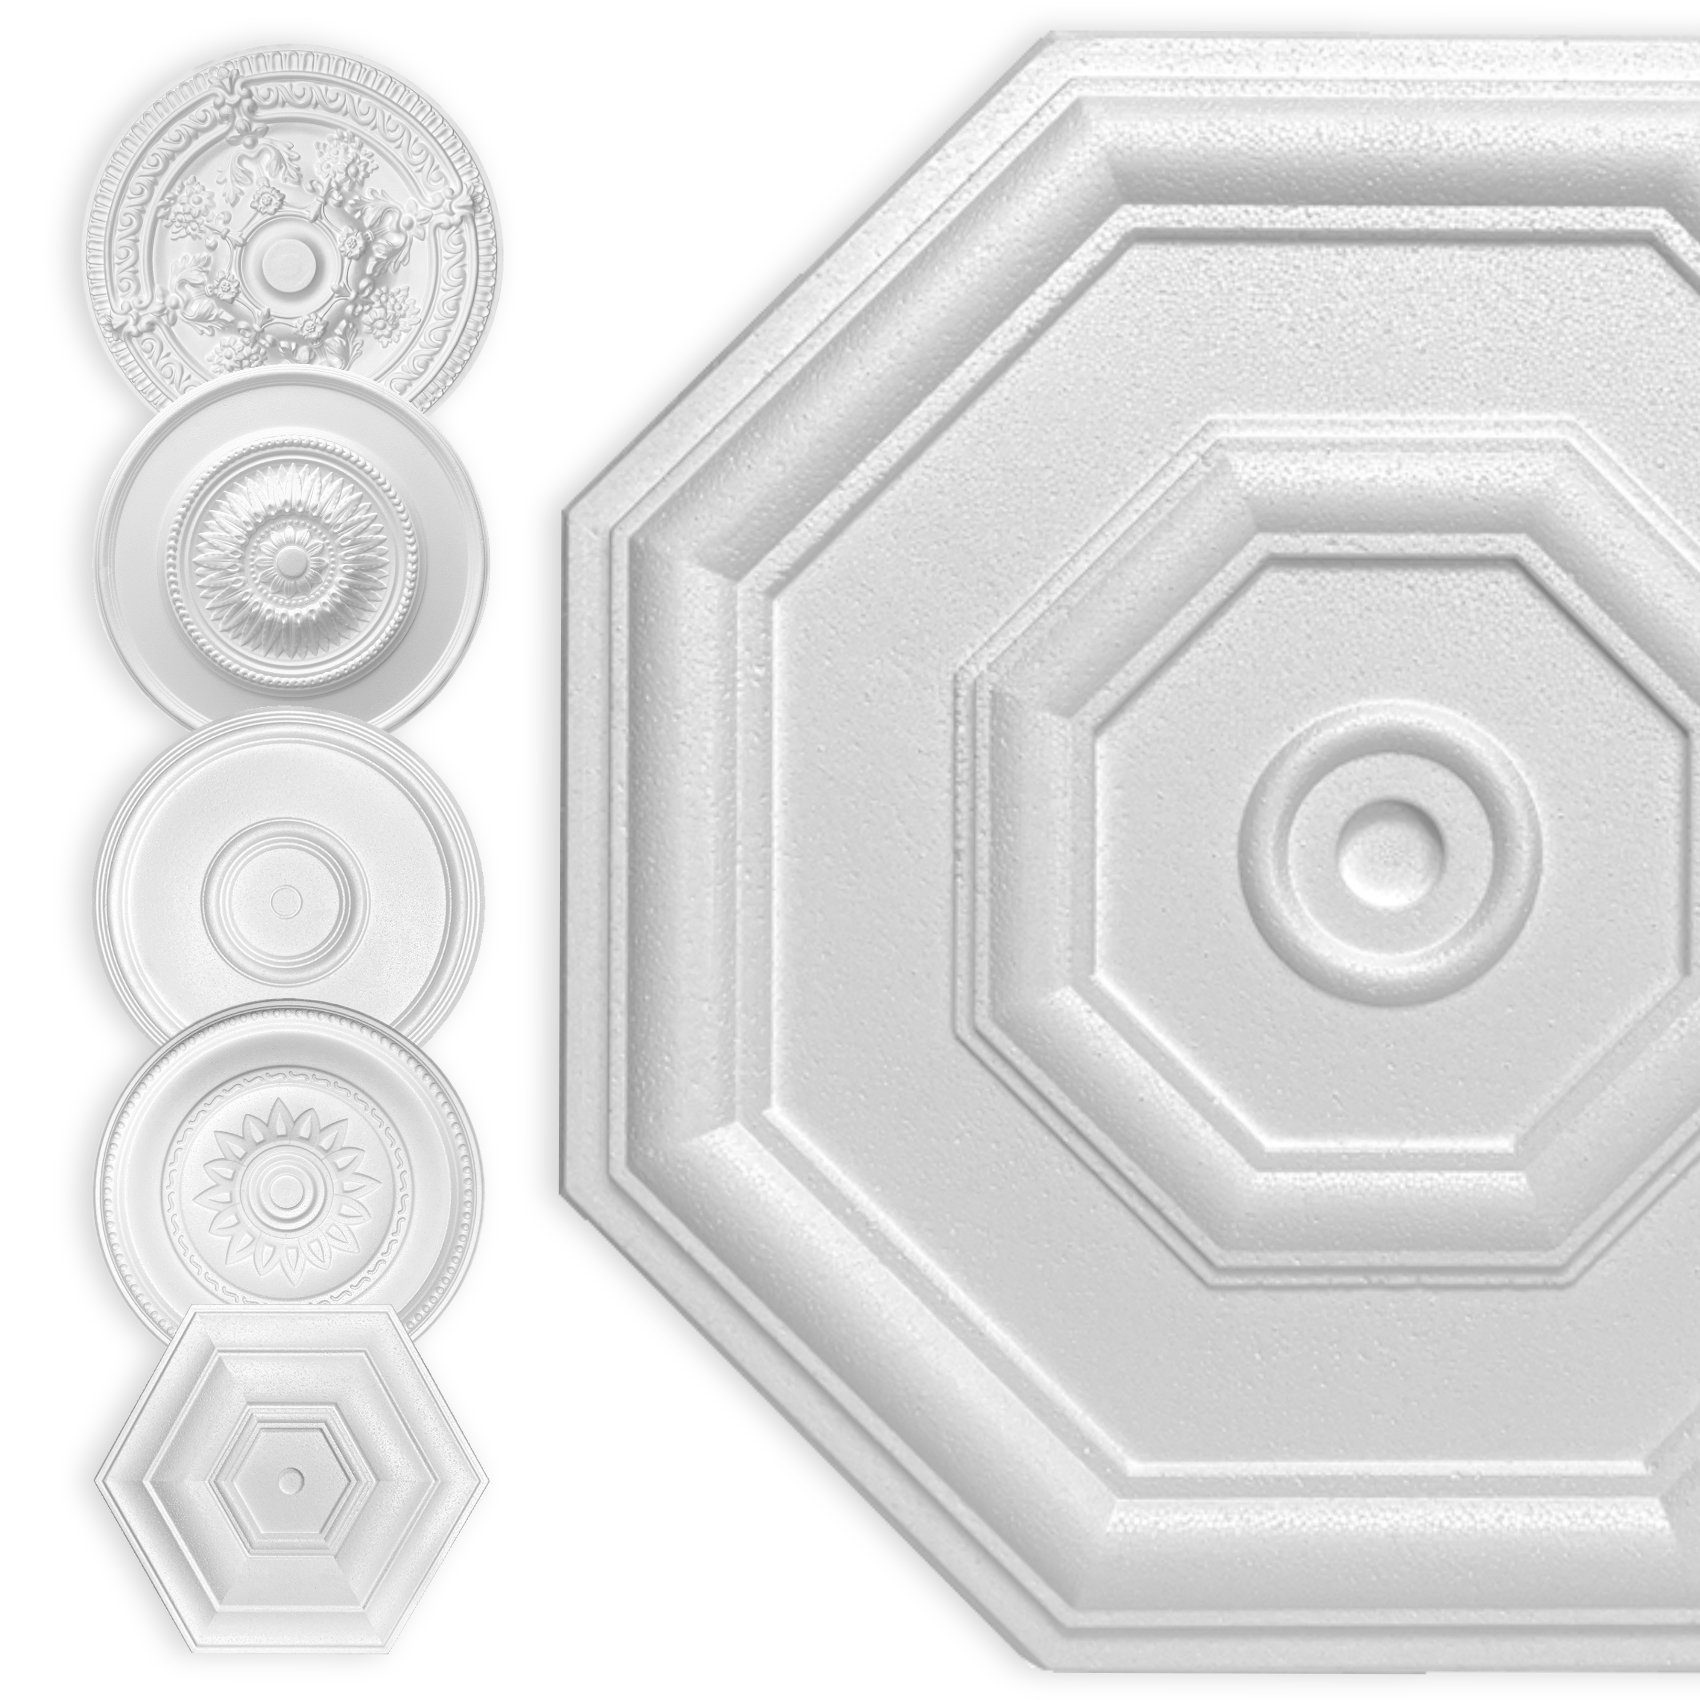 Hexim Wanddekoobjekt Achteck 40cm (HEXIM Stuckrosette aus EPS Styropor weiß - Deckenrosette weiß, Zierelement, Stuck (Hexim) Wanddeko Wohnzimmer Decke Polystyrol)